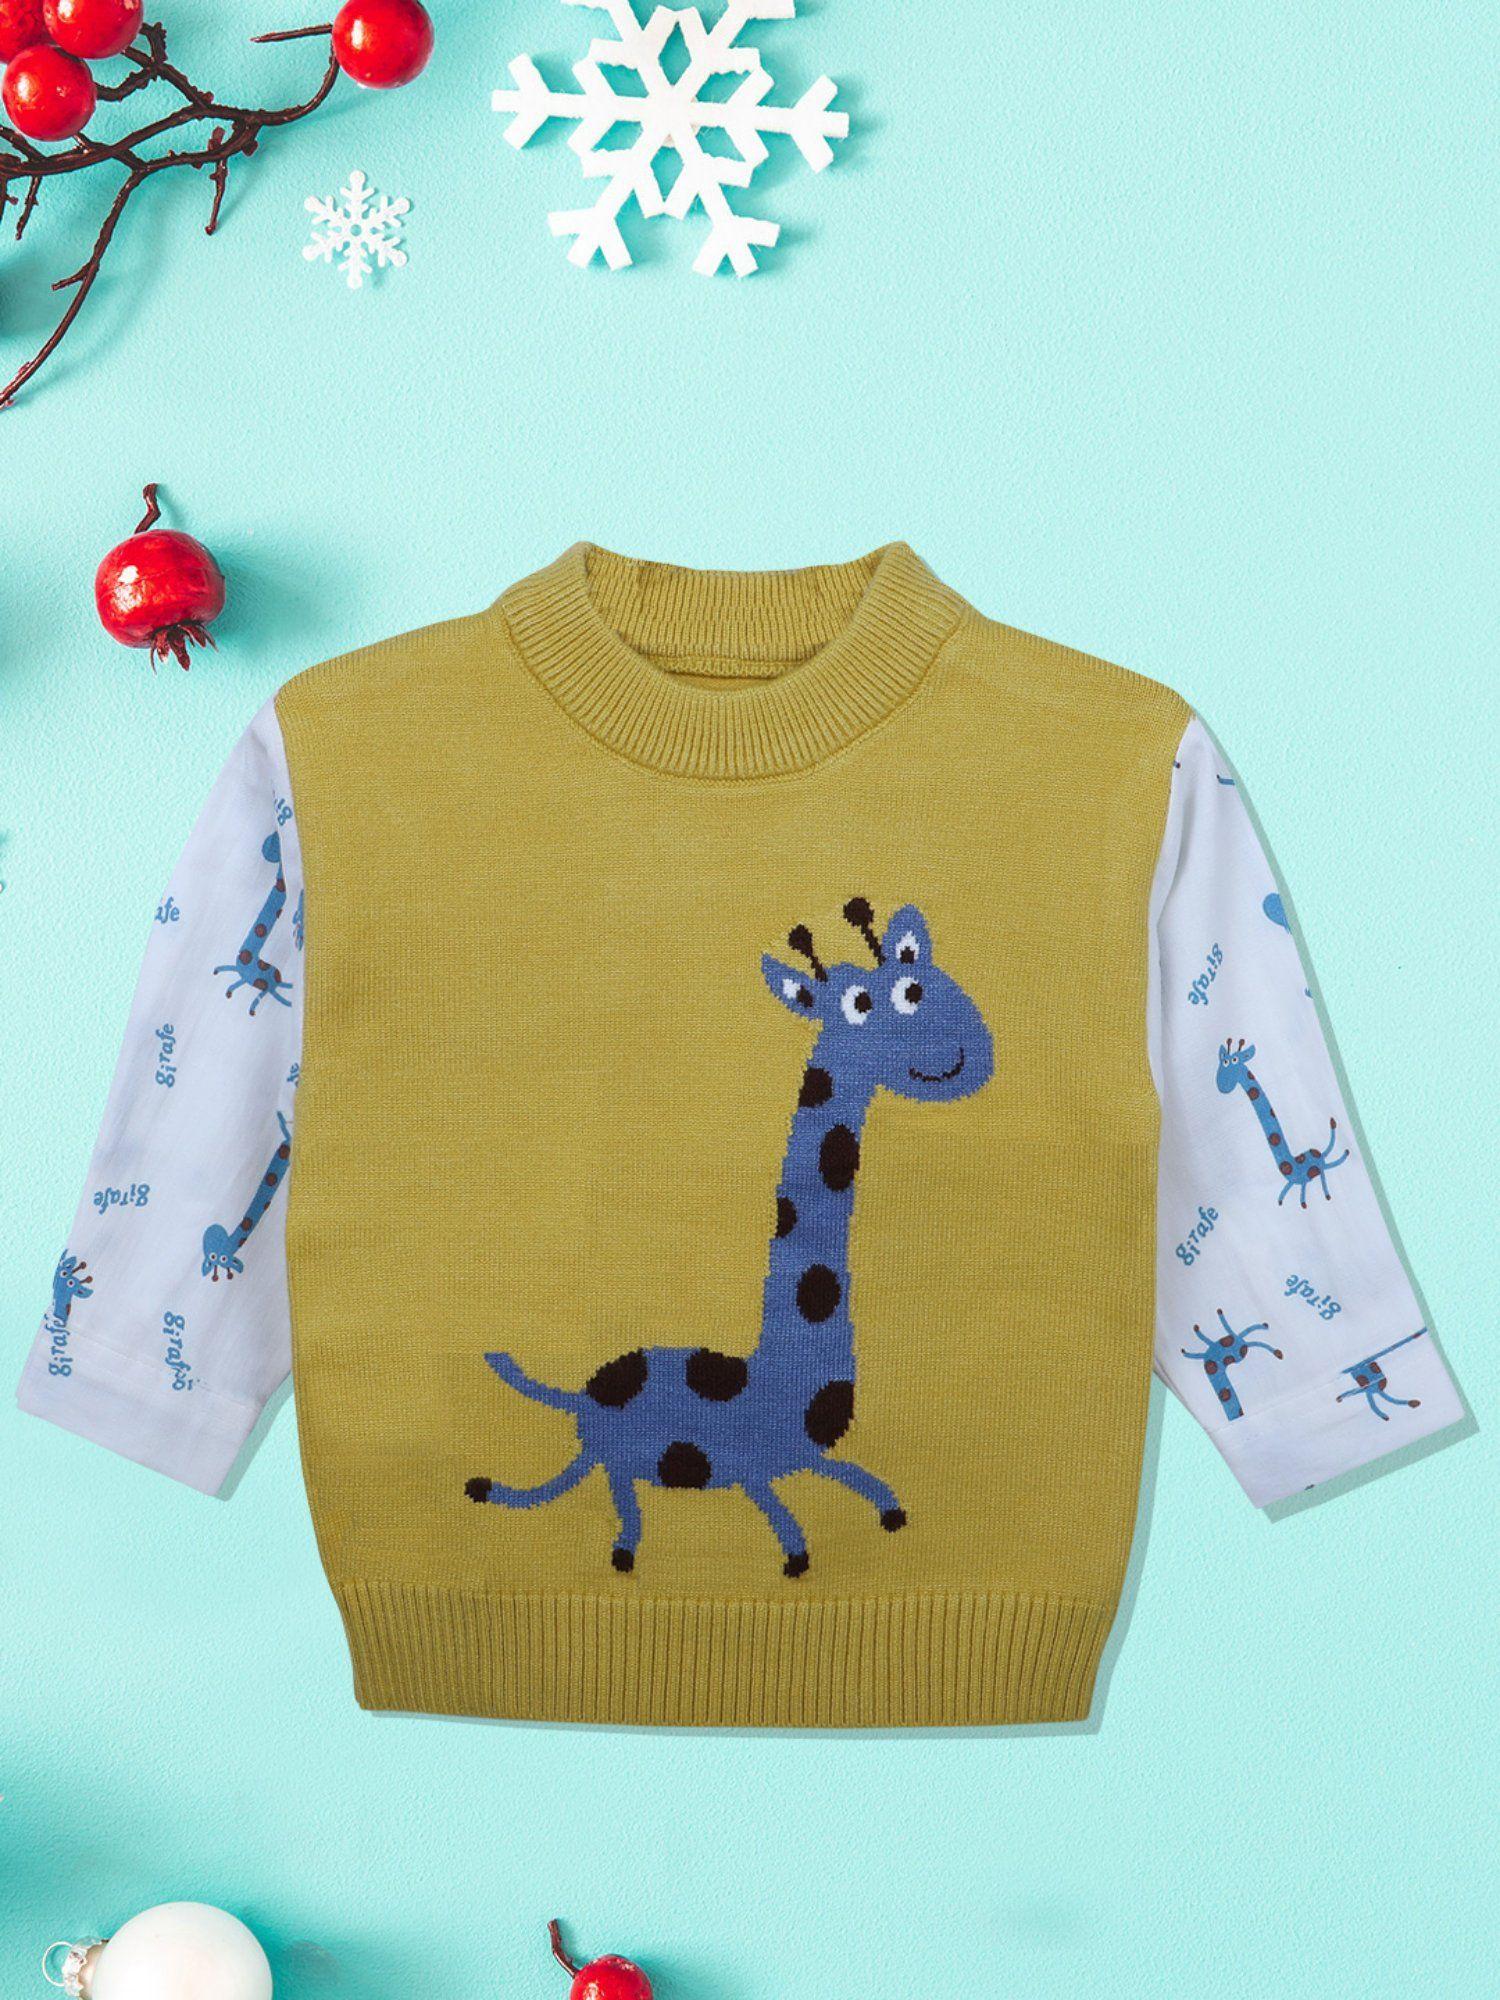 cute giraffe premium full sleeves knitted sweater mustard and white